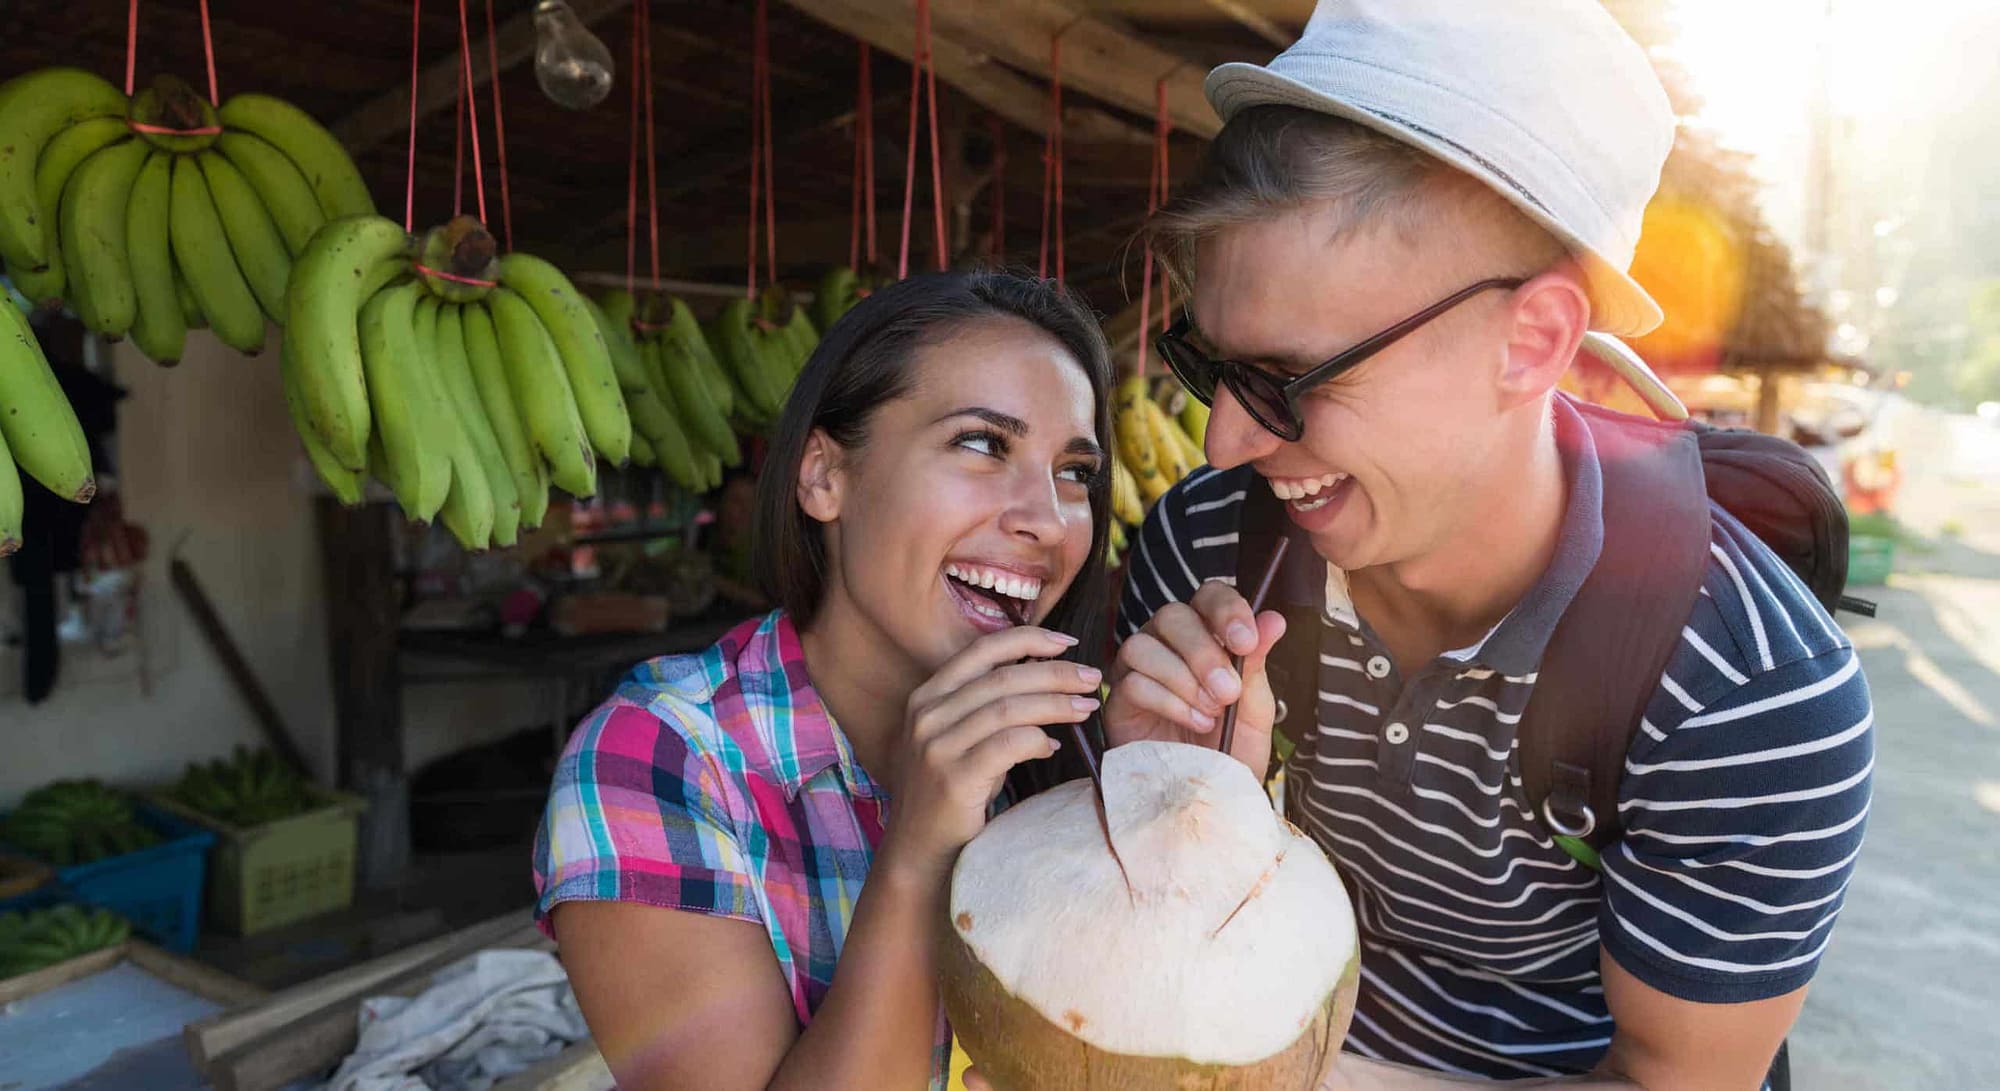 Pärchen trinkt Kokosnuss auf Strassenmarkt in Thailand